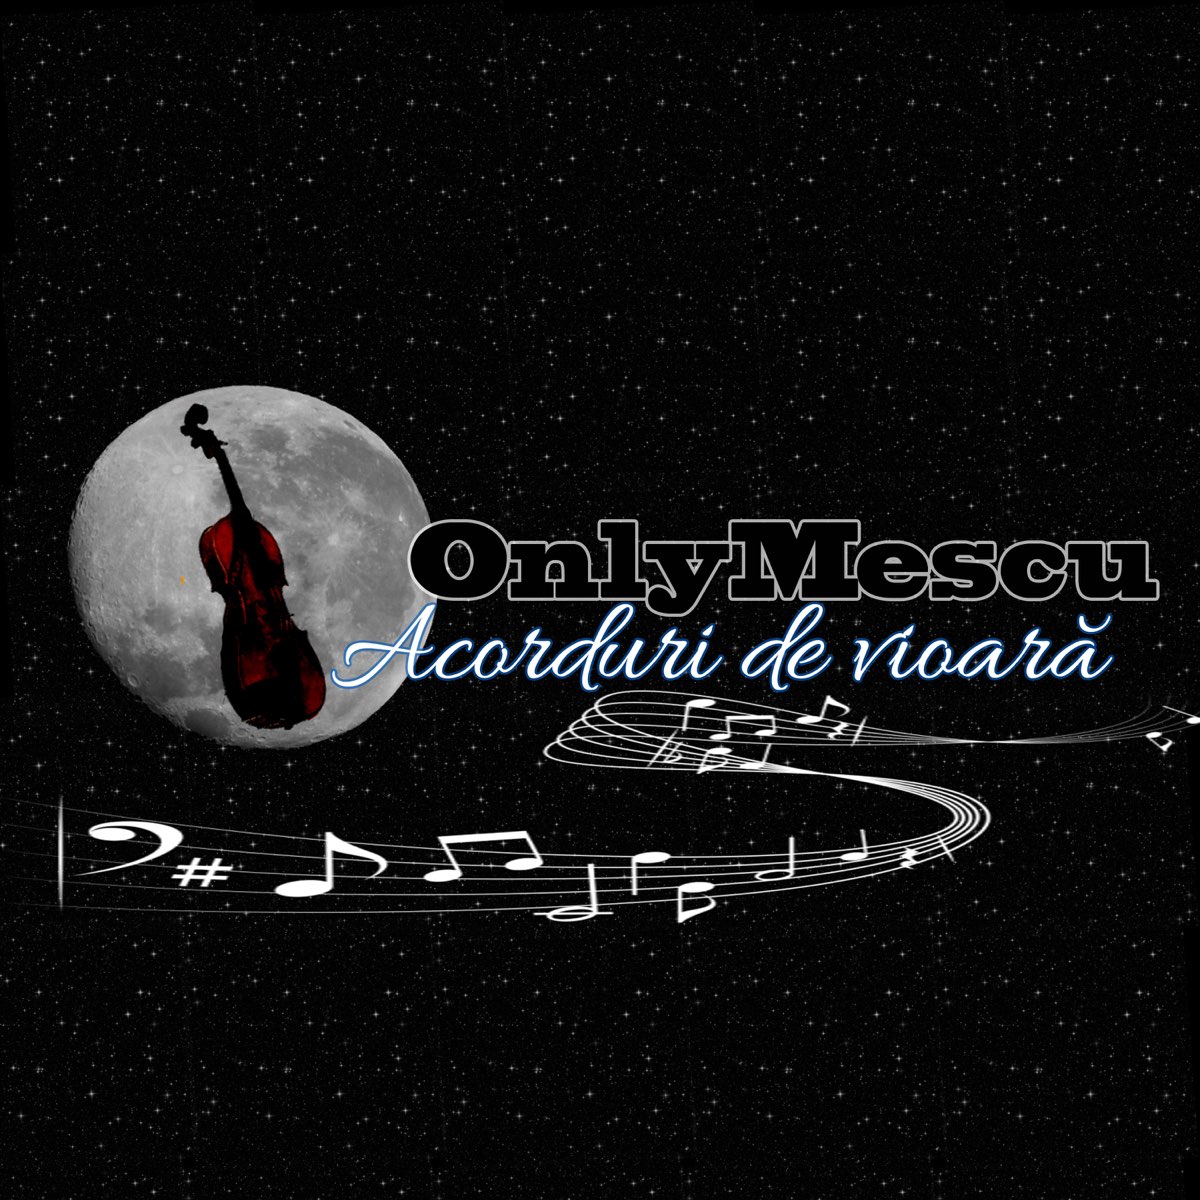 Acorduri De Vioară - EP by OnlyMescu on Apple Music